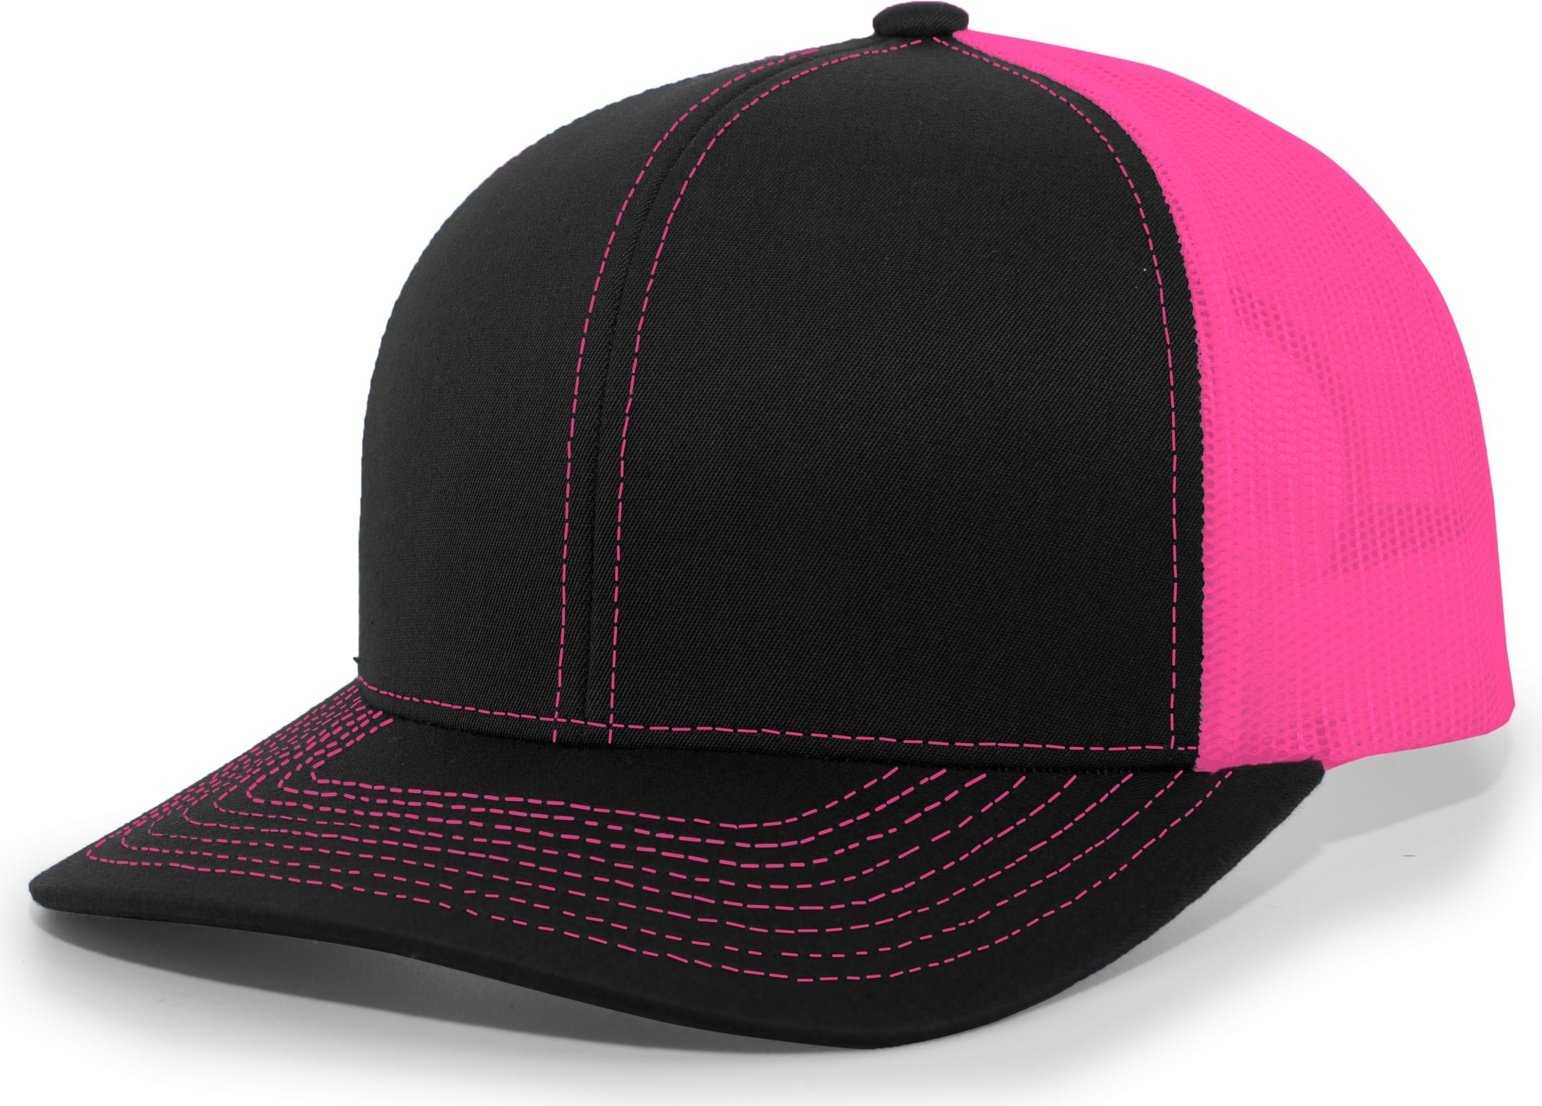 Pacific Headwear 104C Trucker Snapback Cap - Black Pink - HIT a Double